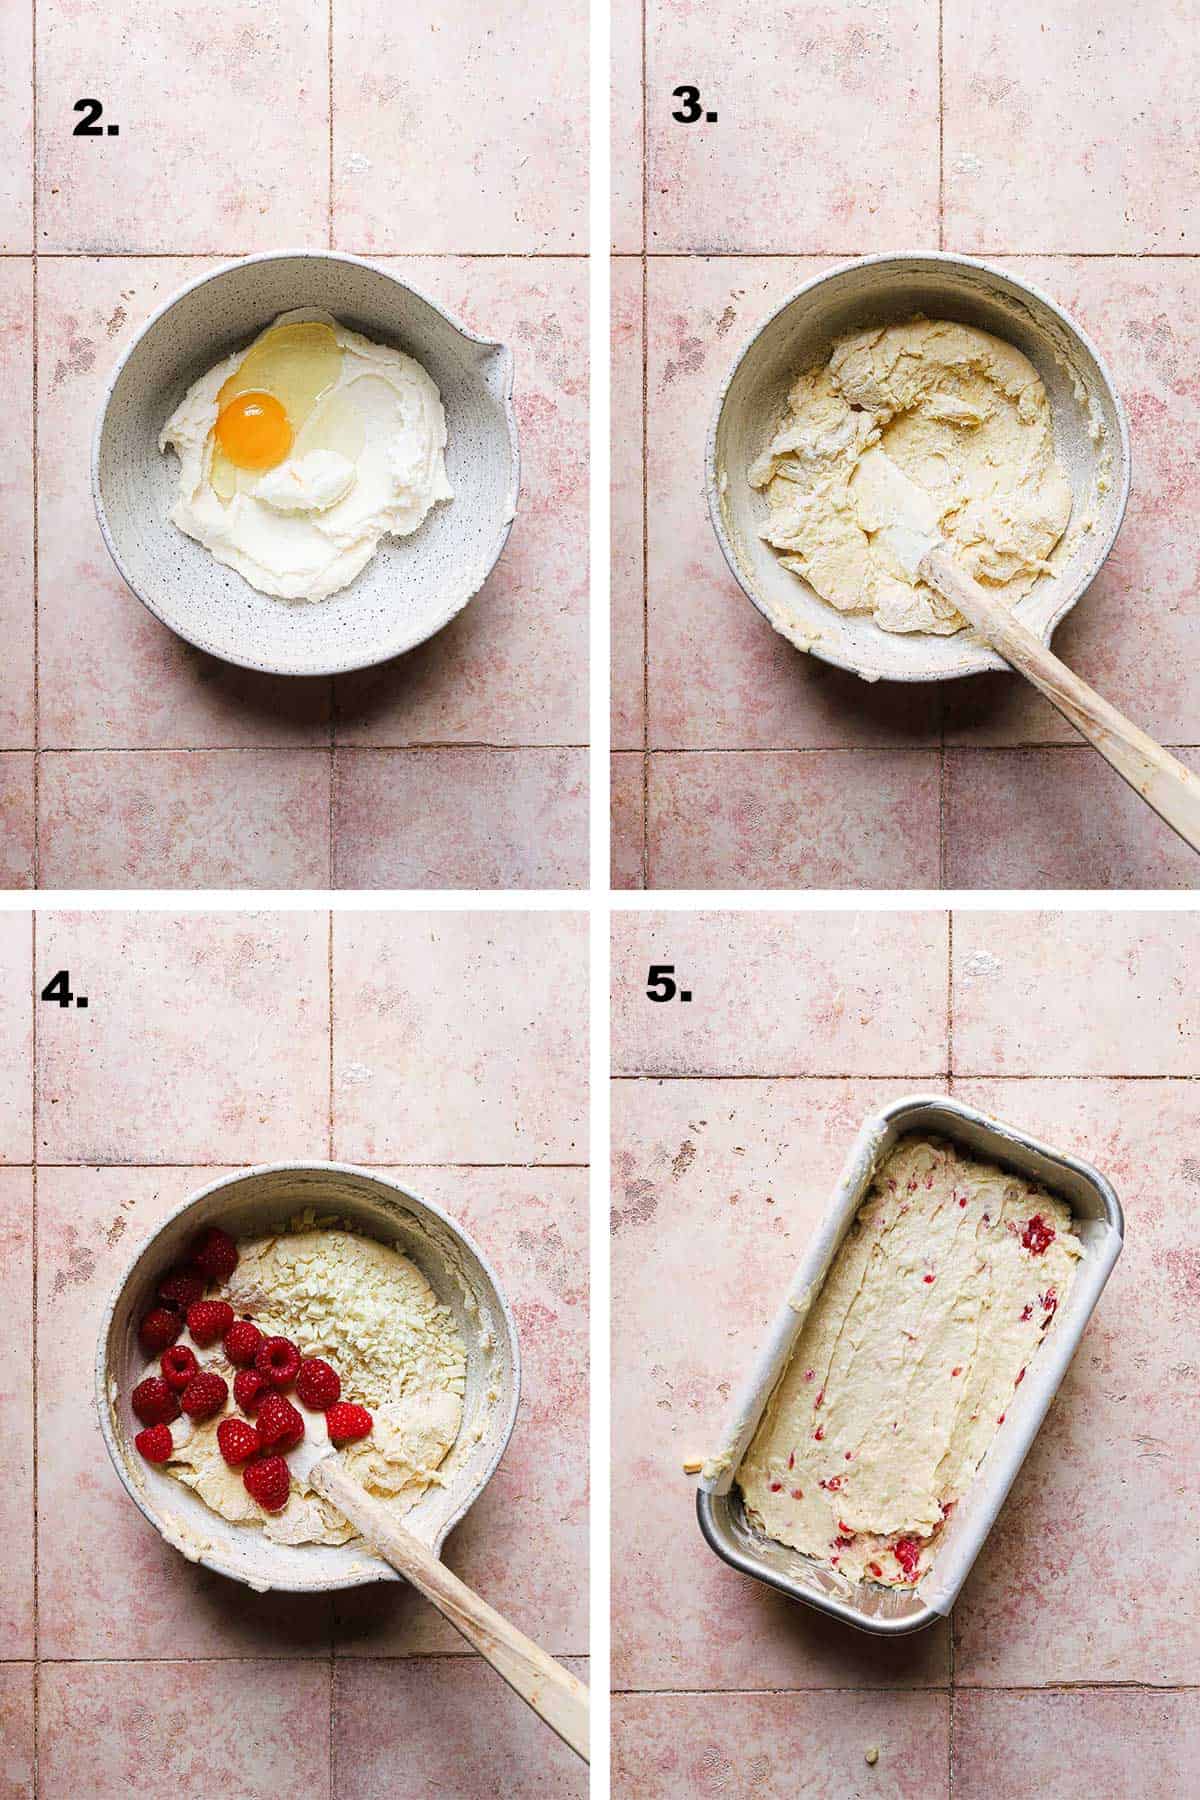 How to make raspberry white chocolate cake